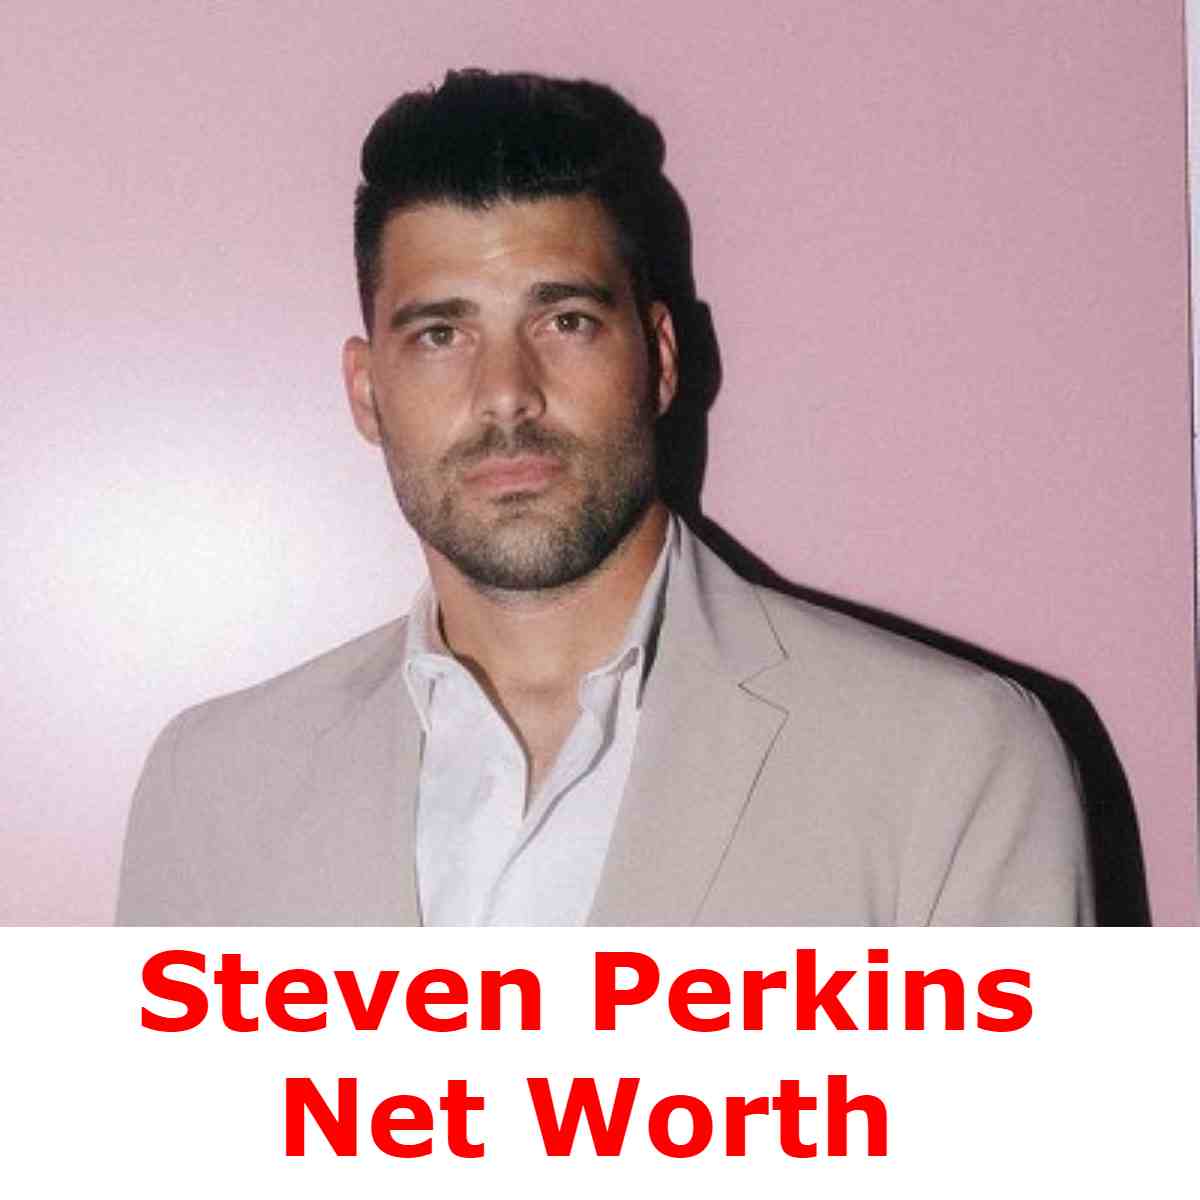 Steven Perkins Net Worth